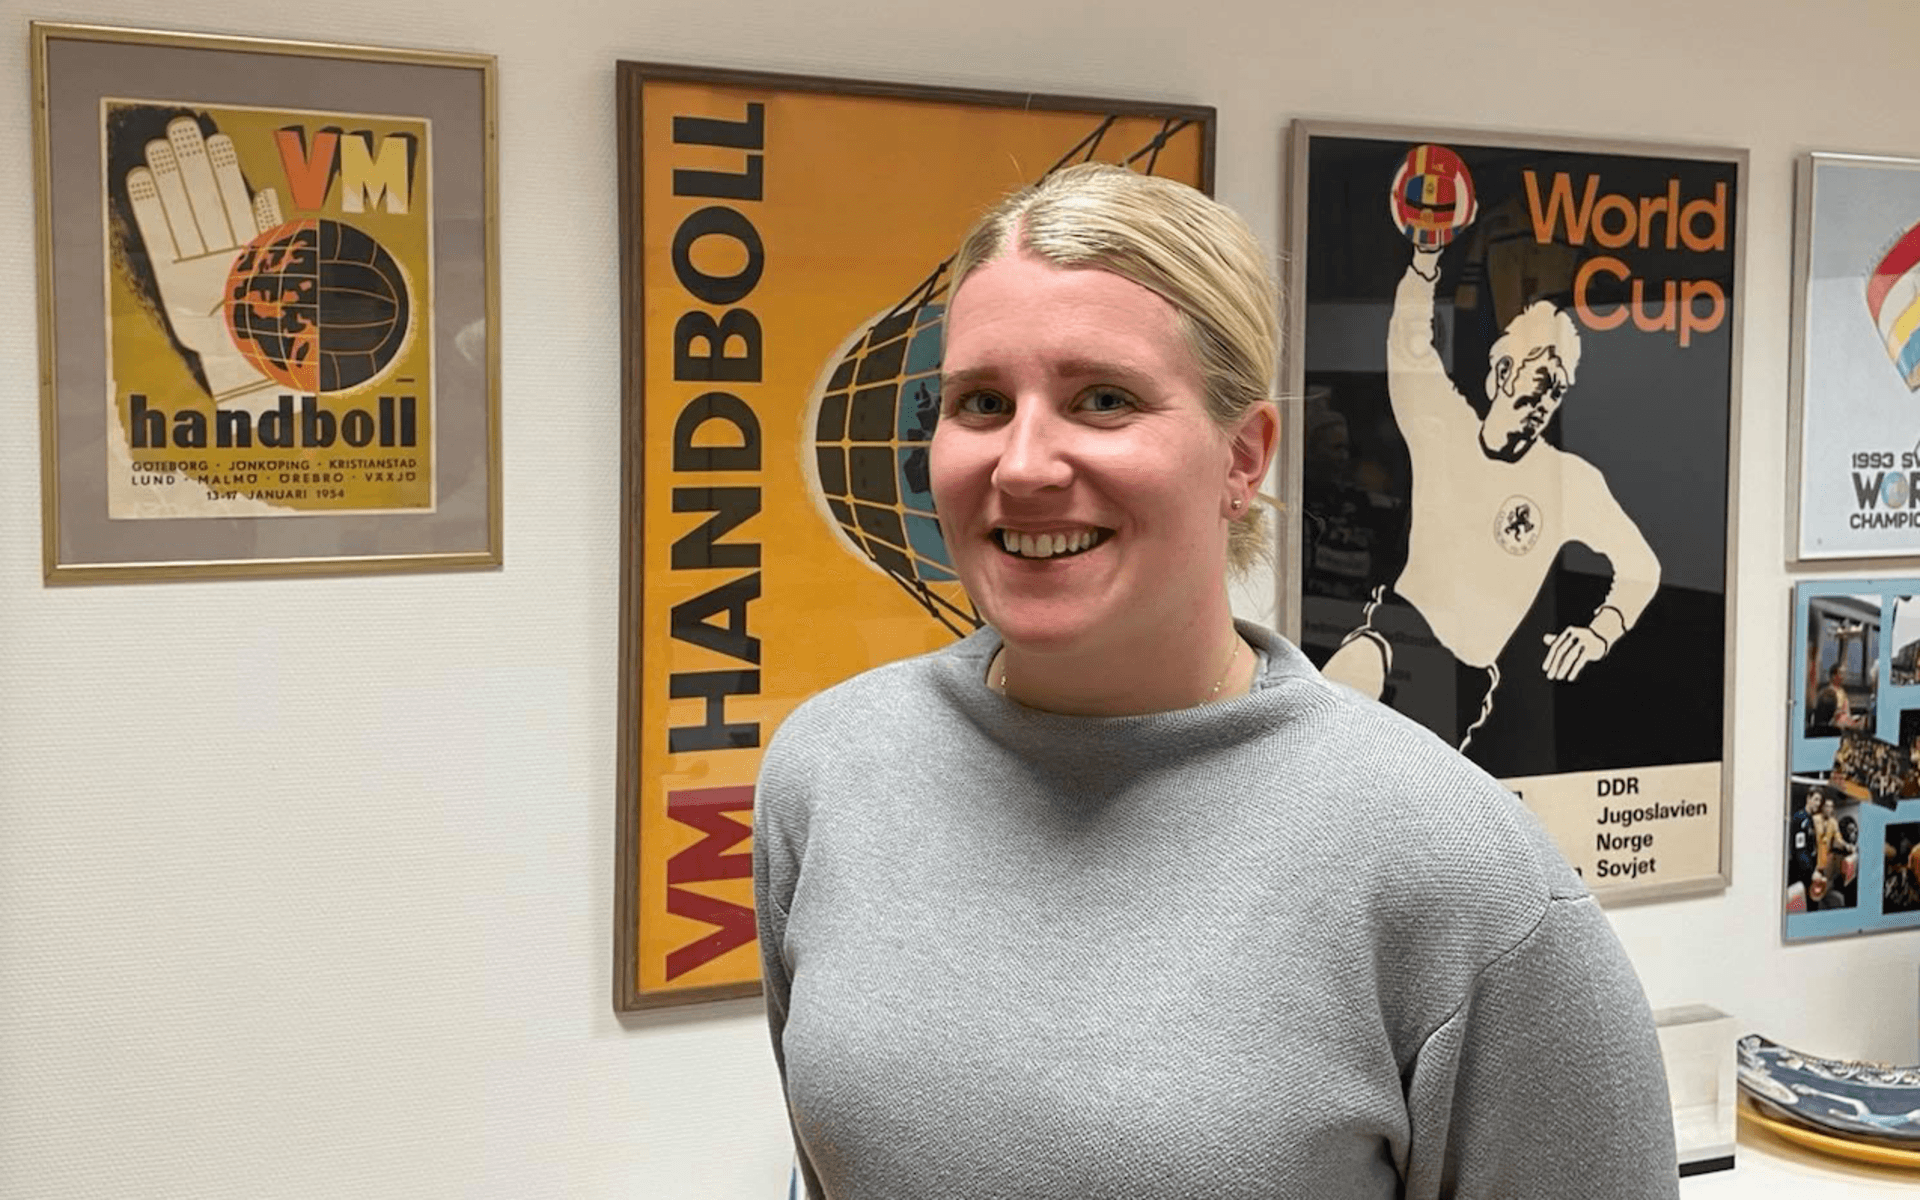 Malin Svensson från Stenungsund fick jobbet som ny verksamhetschef på Handbollförbundet Väst. Hon lämnade därmed uppdraget som klubbchef i Stenungsunds HK.